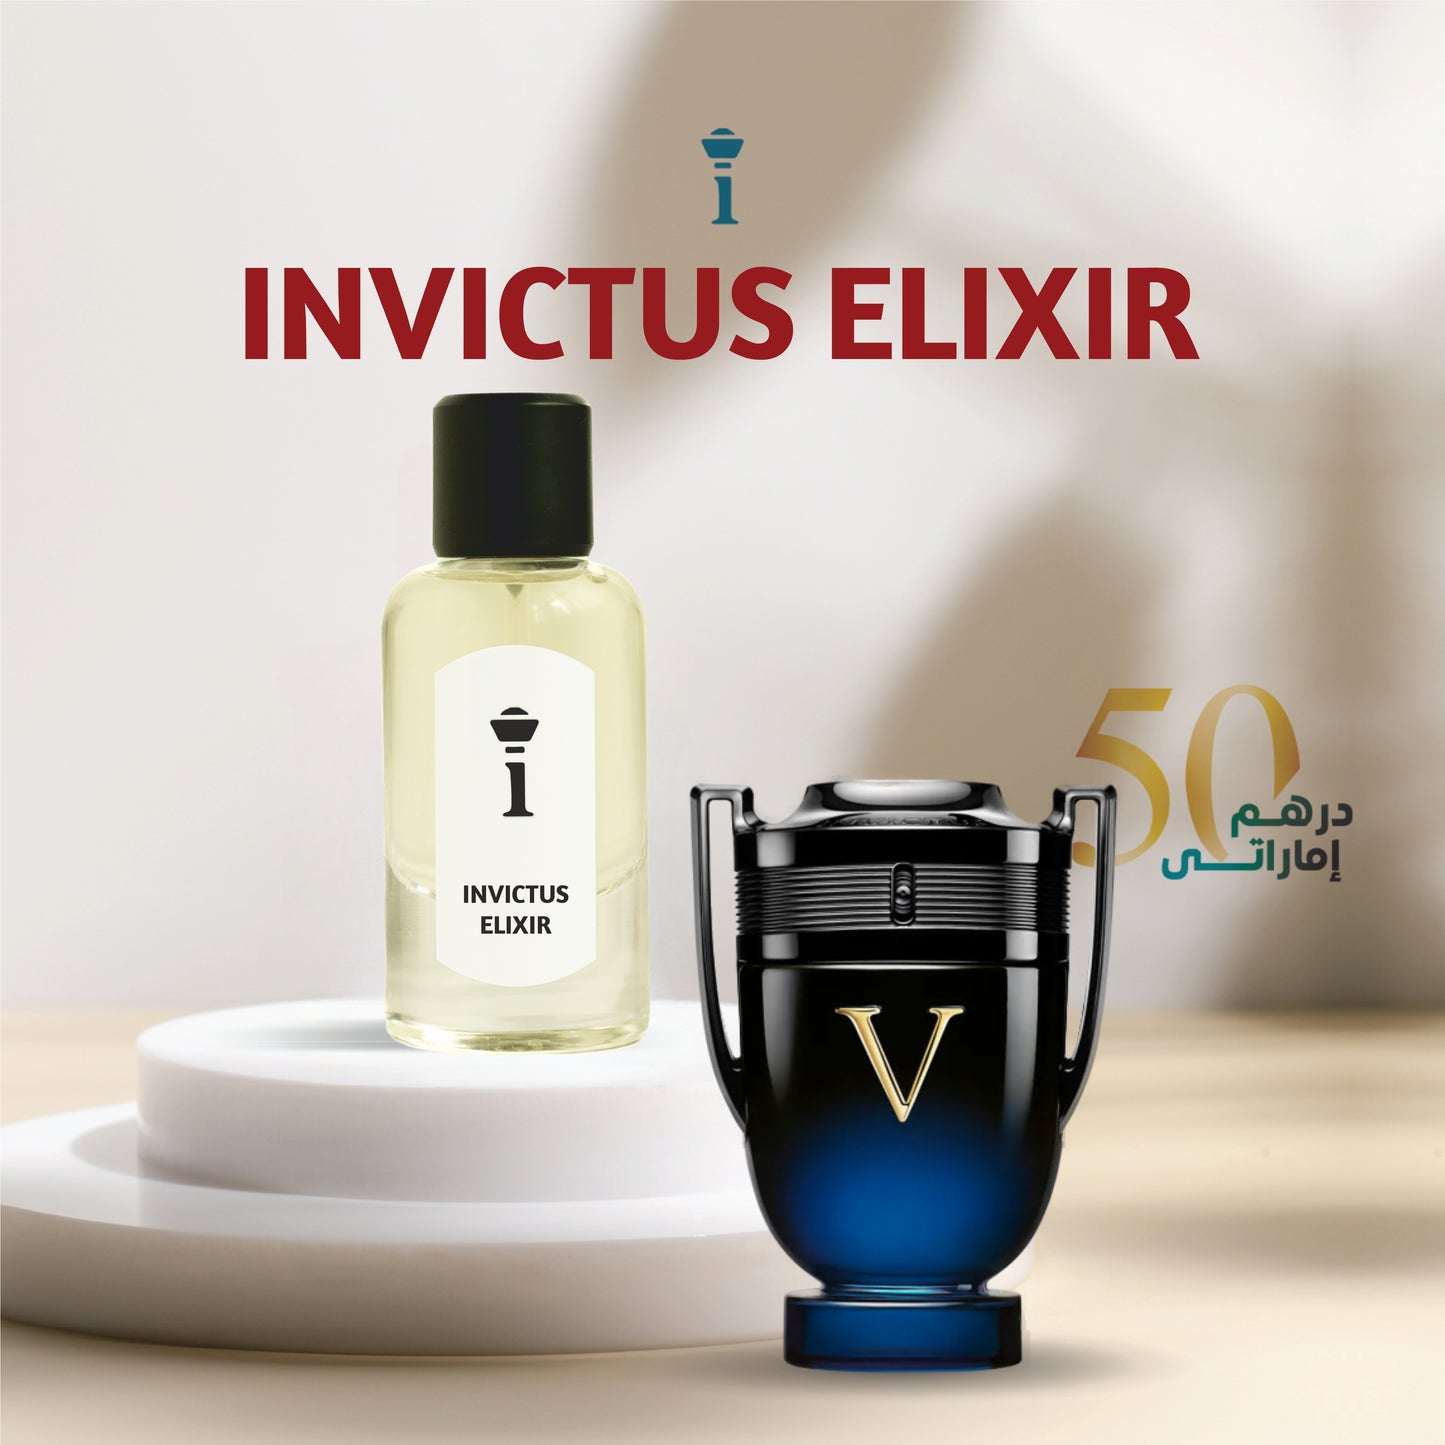 INVICTUS ELIXIR